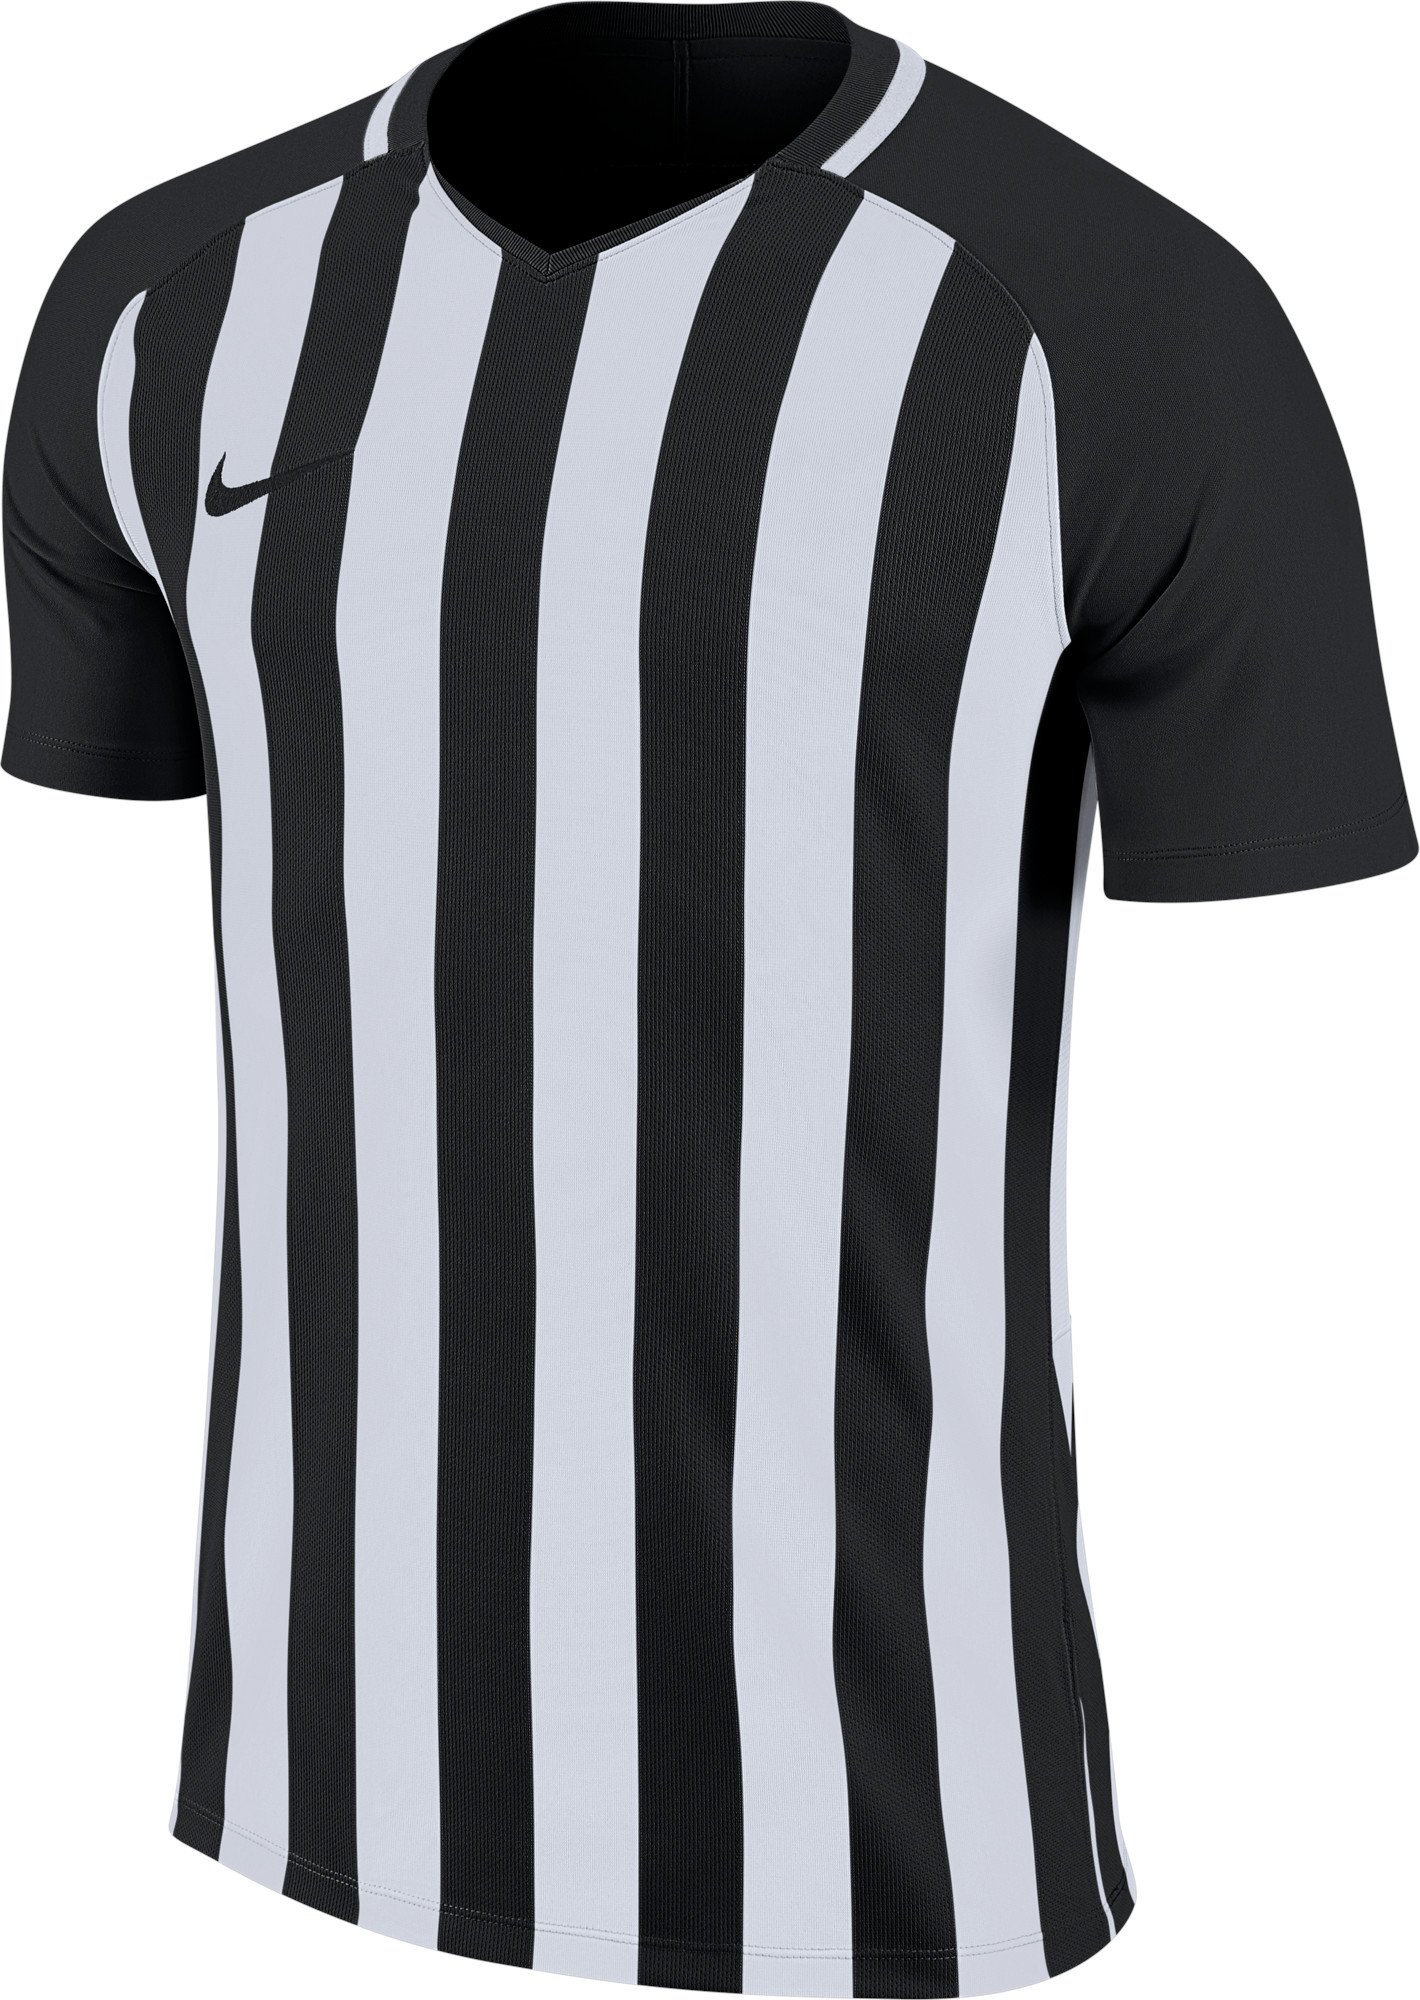 Pánský dres s krátkým rukávem Nike Striped Division III